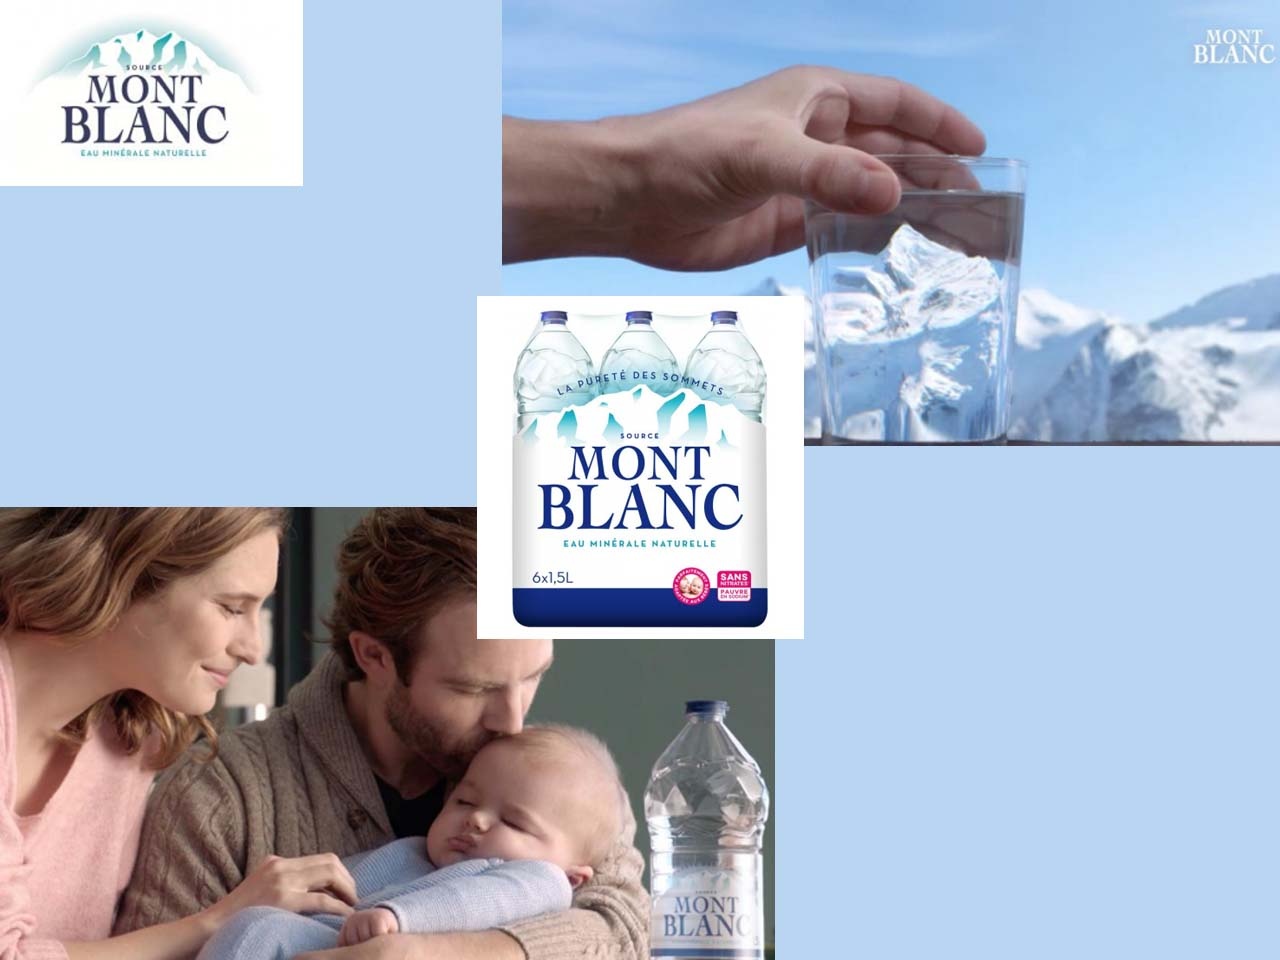 Mont Blanc présente sa nouvelle publicité, « Quand vous buvez un verre d’eau minérale naturelle Mont Blanc, c’est tout le Mont Blanc qui s’offre à vous »